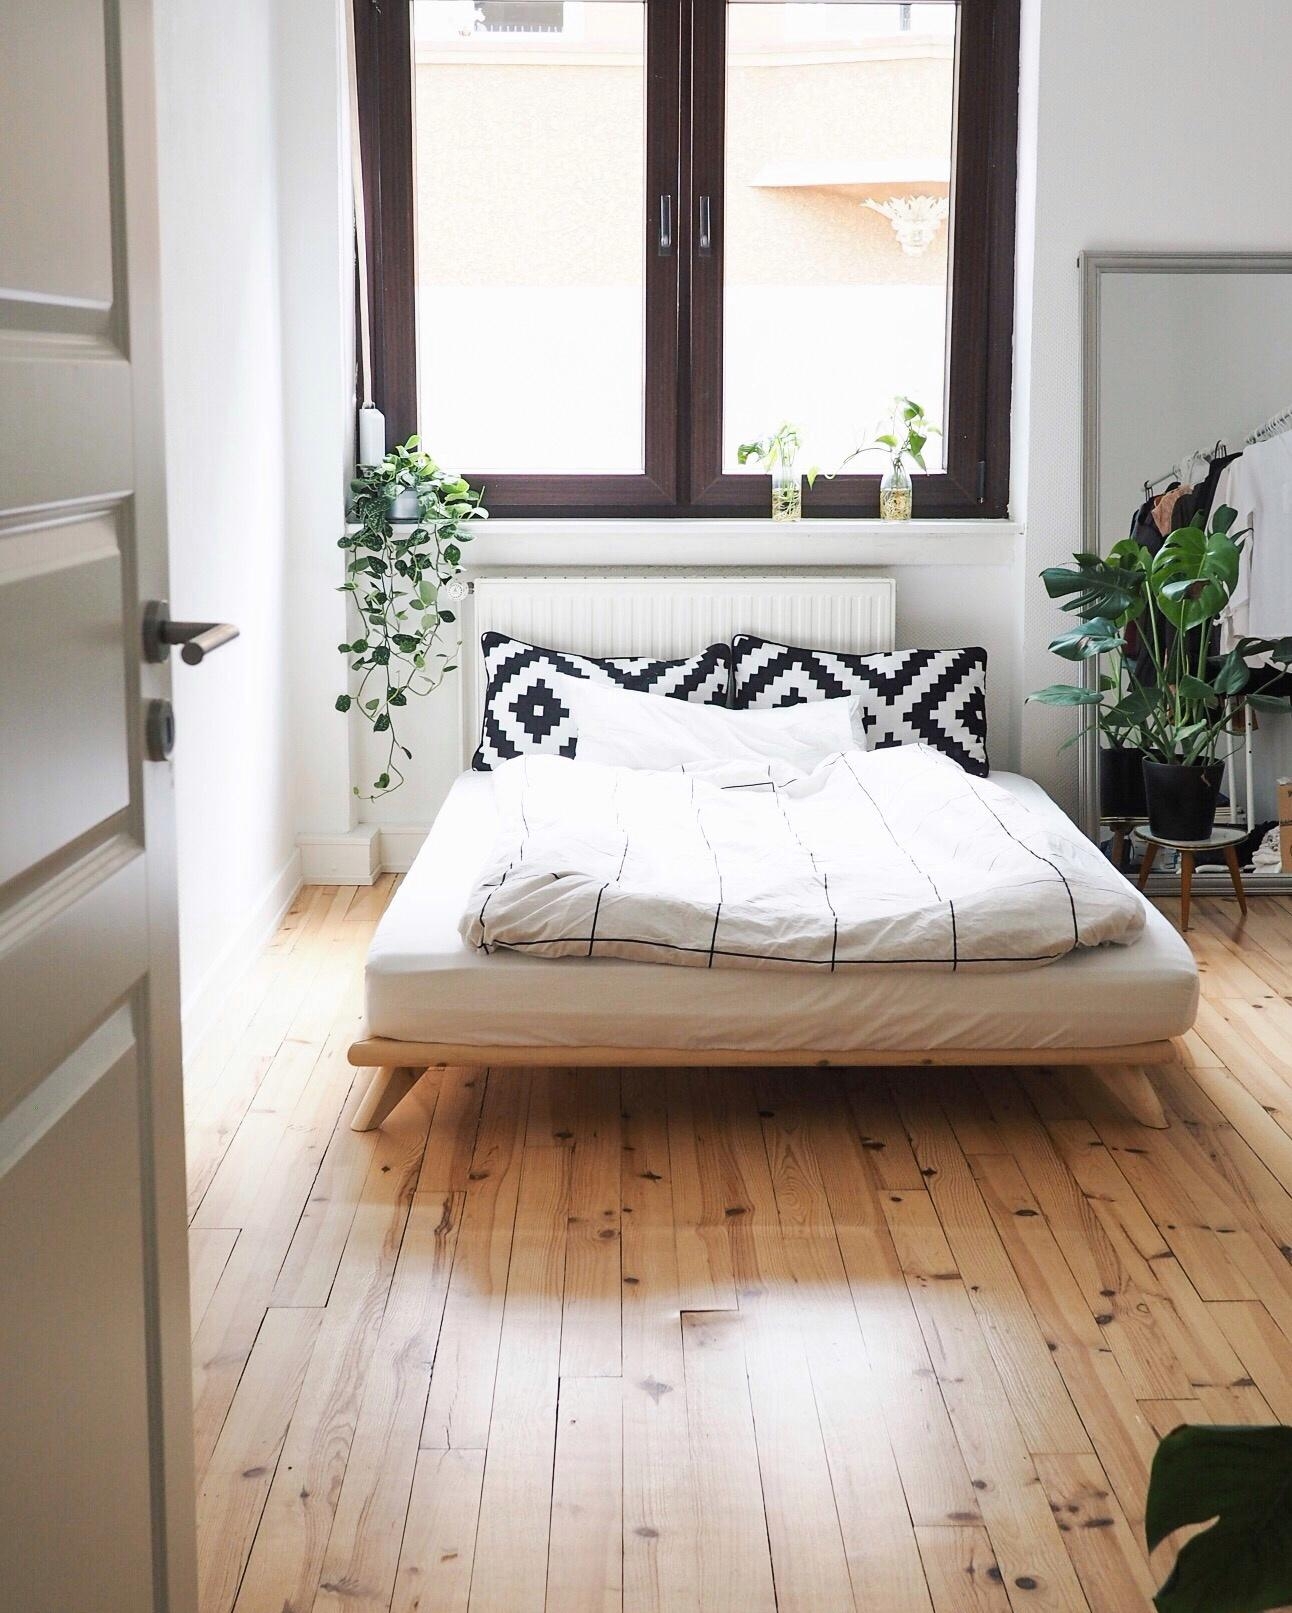 Kleiner Einblick ins neue Schlafzimmer!
#couchliebt #bedroom #bedroominspo #couchmagazin